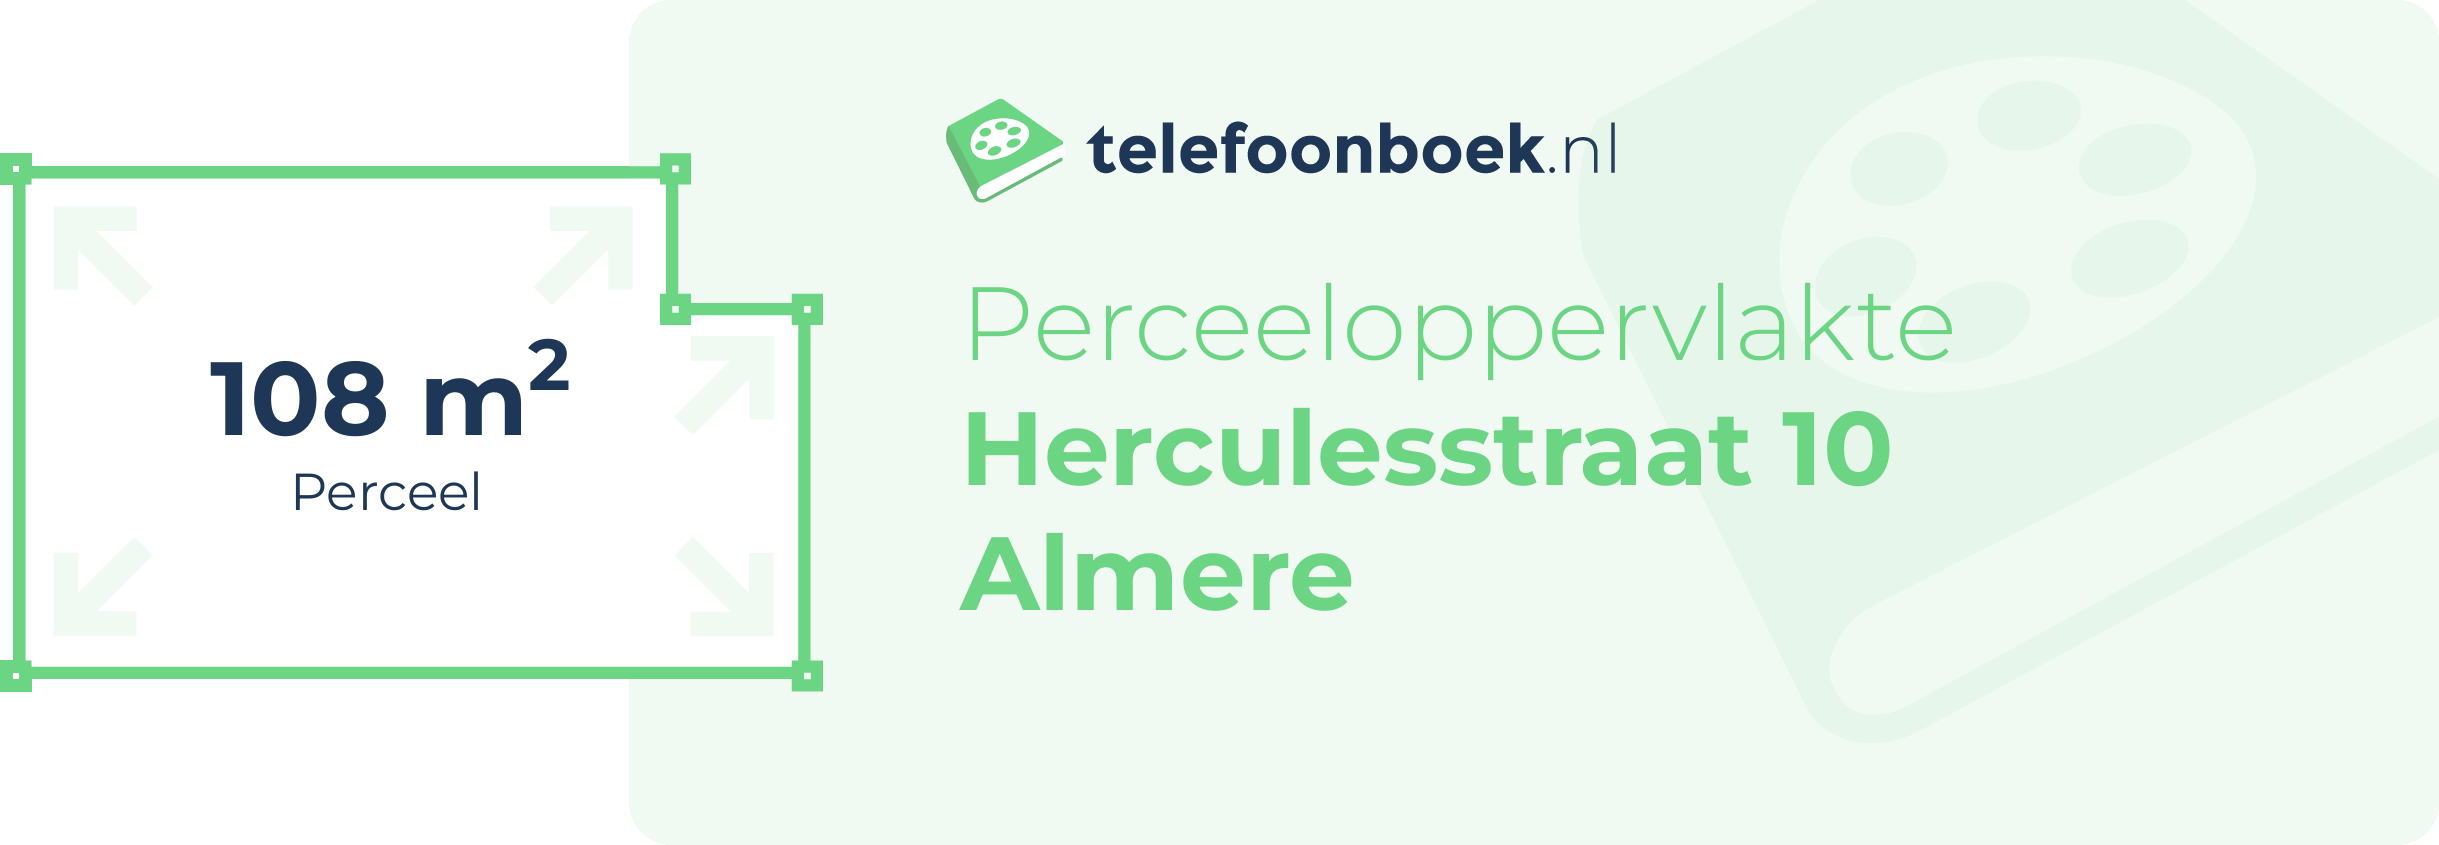 Perceeloppervlakte Herculesstraat 10 Almere